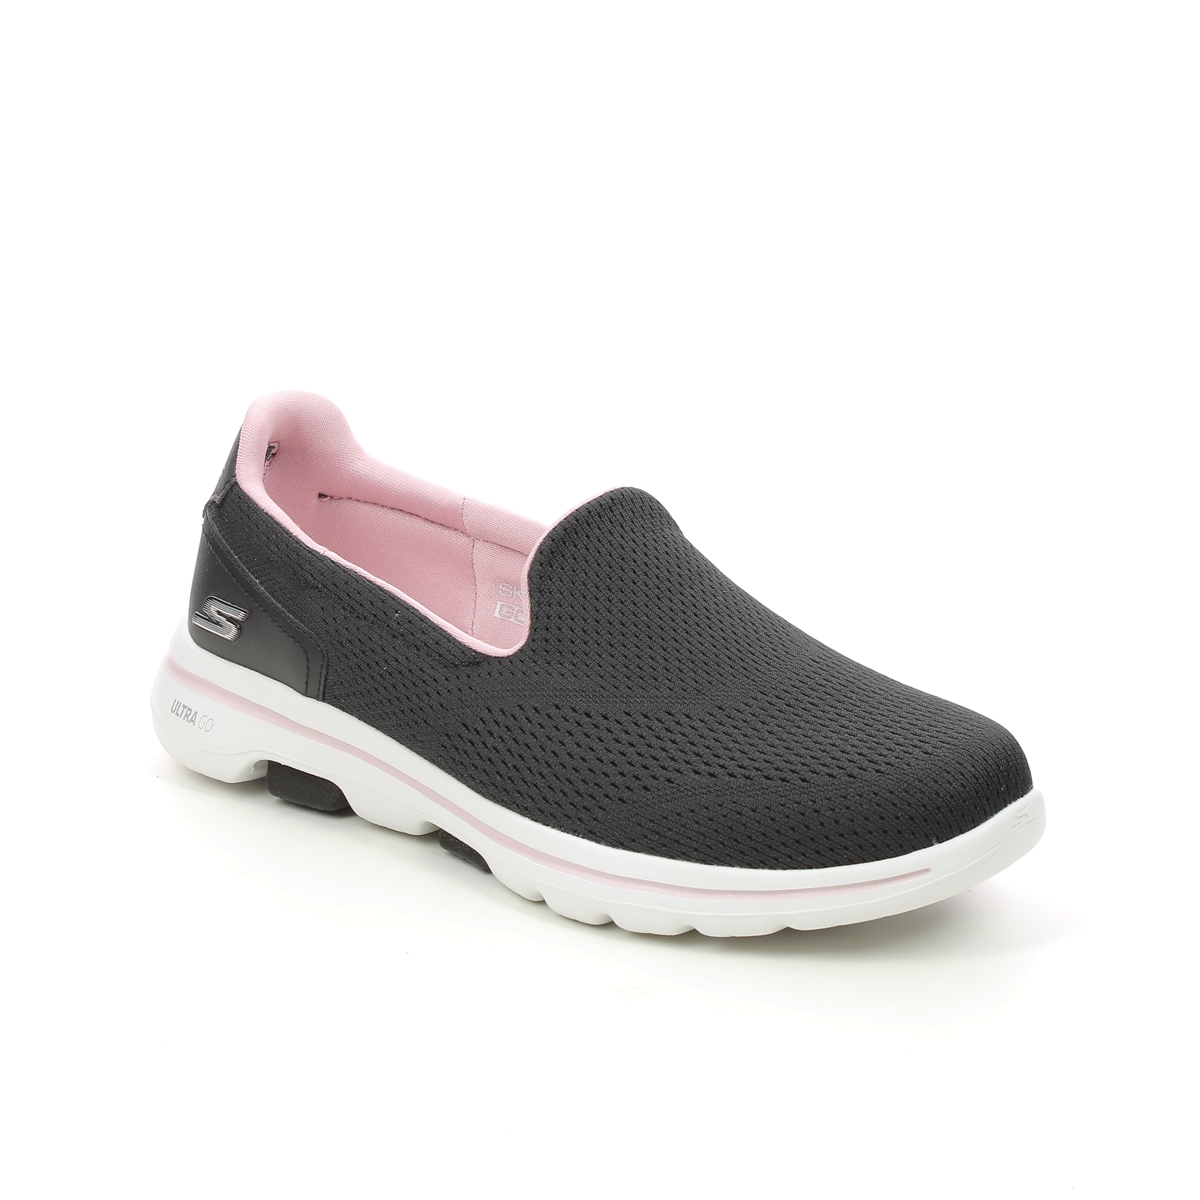  Skechers Women's GO Walk Flex-Vella Sneaker, Charcoal, 5